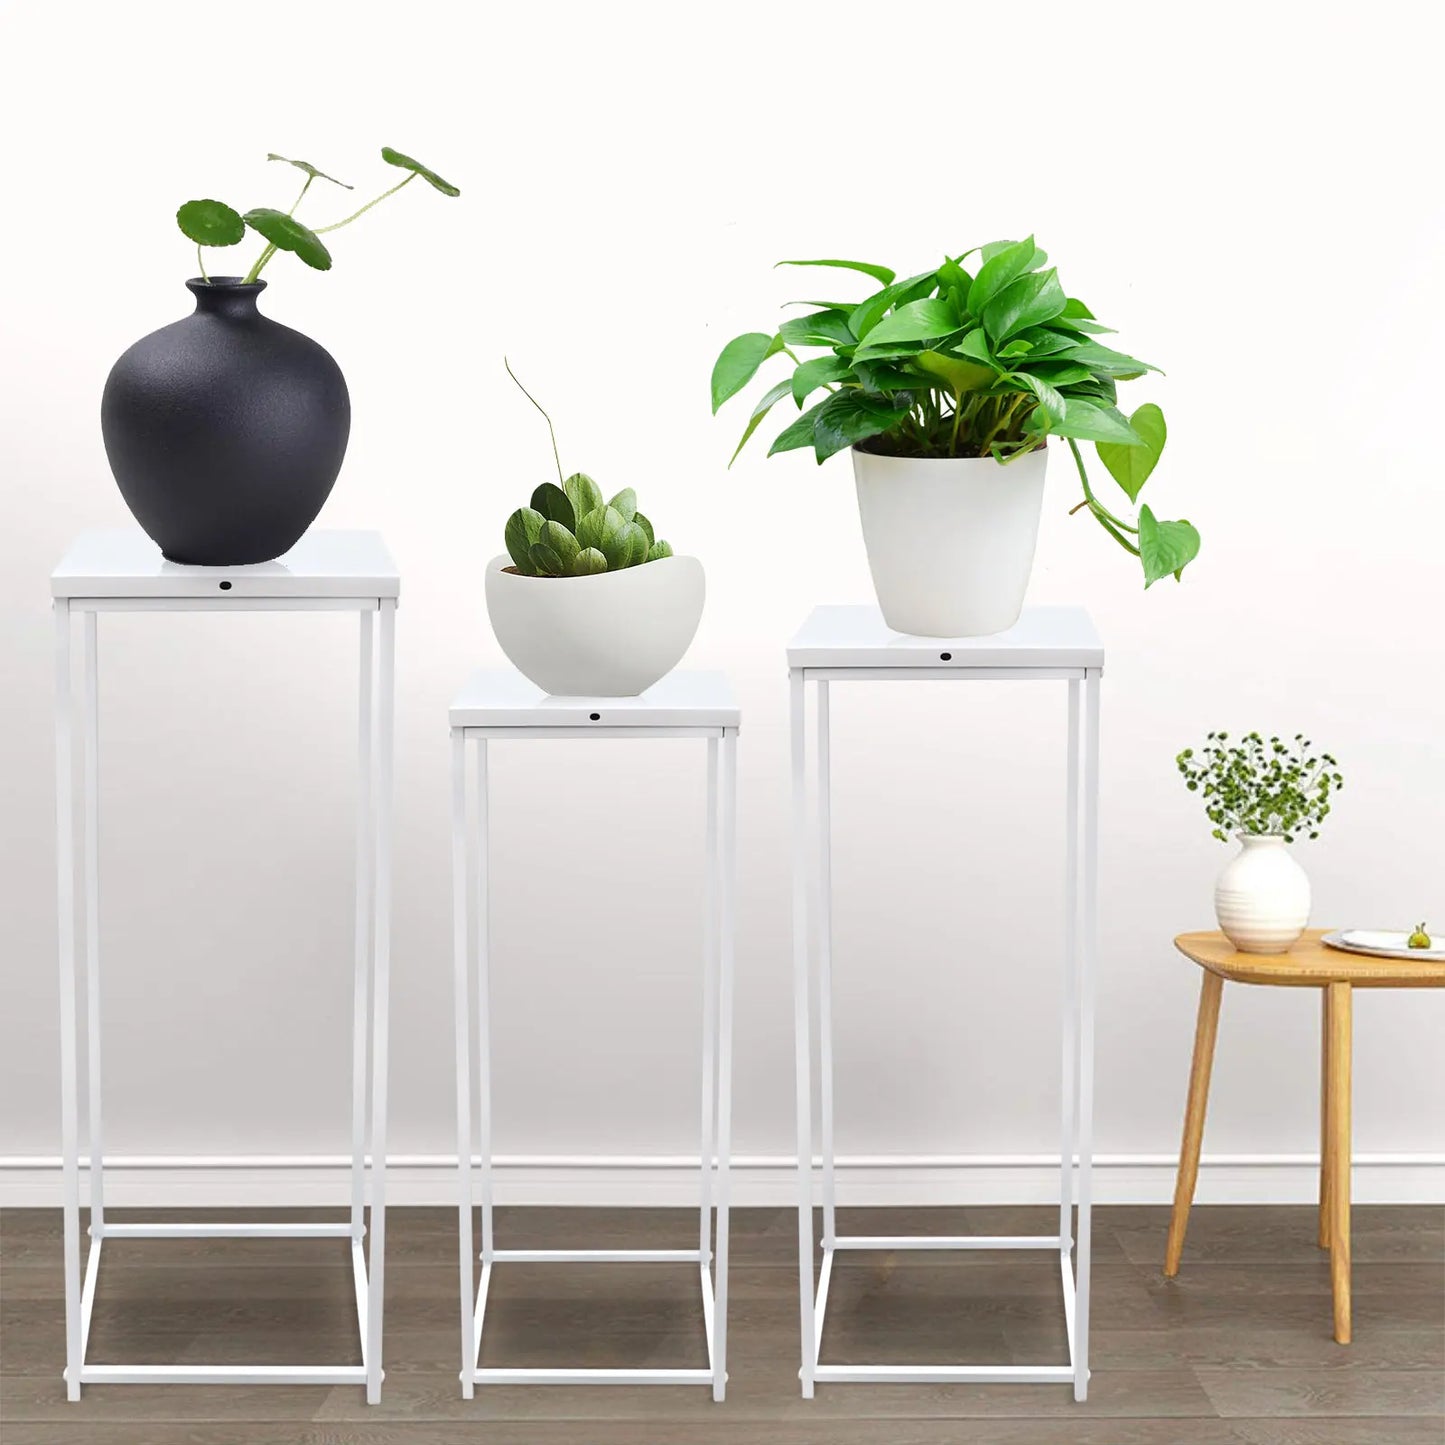 Set of 3 Metal Plant Pot Stand Indoor Flower Display Holder Rack White Set of 3 Metal Plant Stands